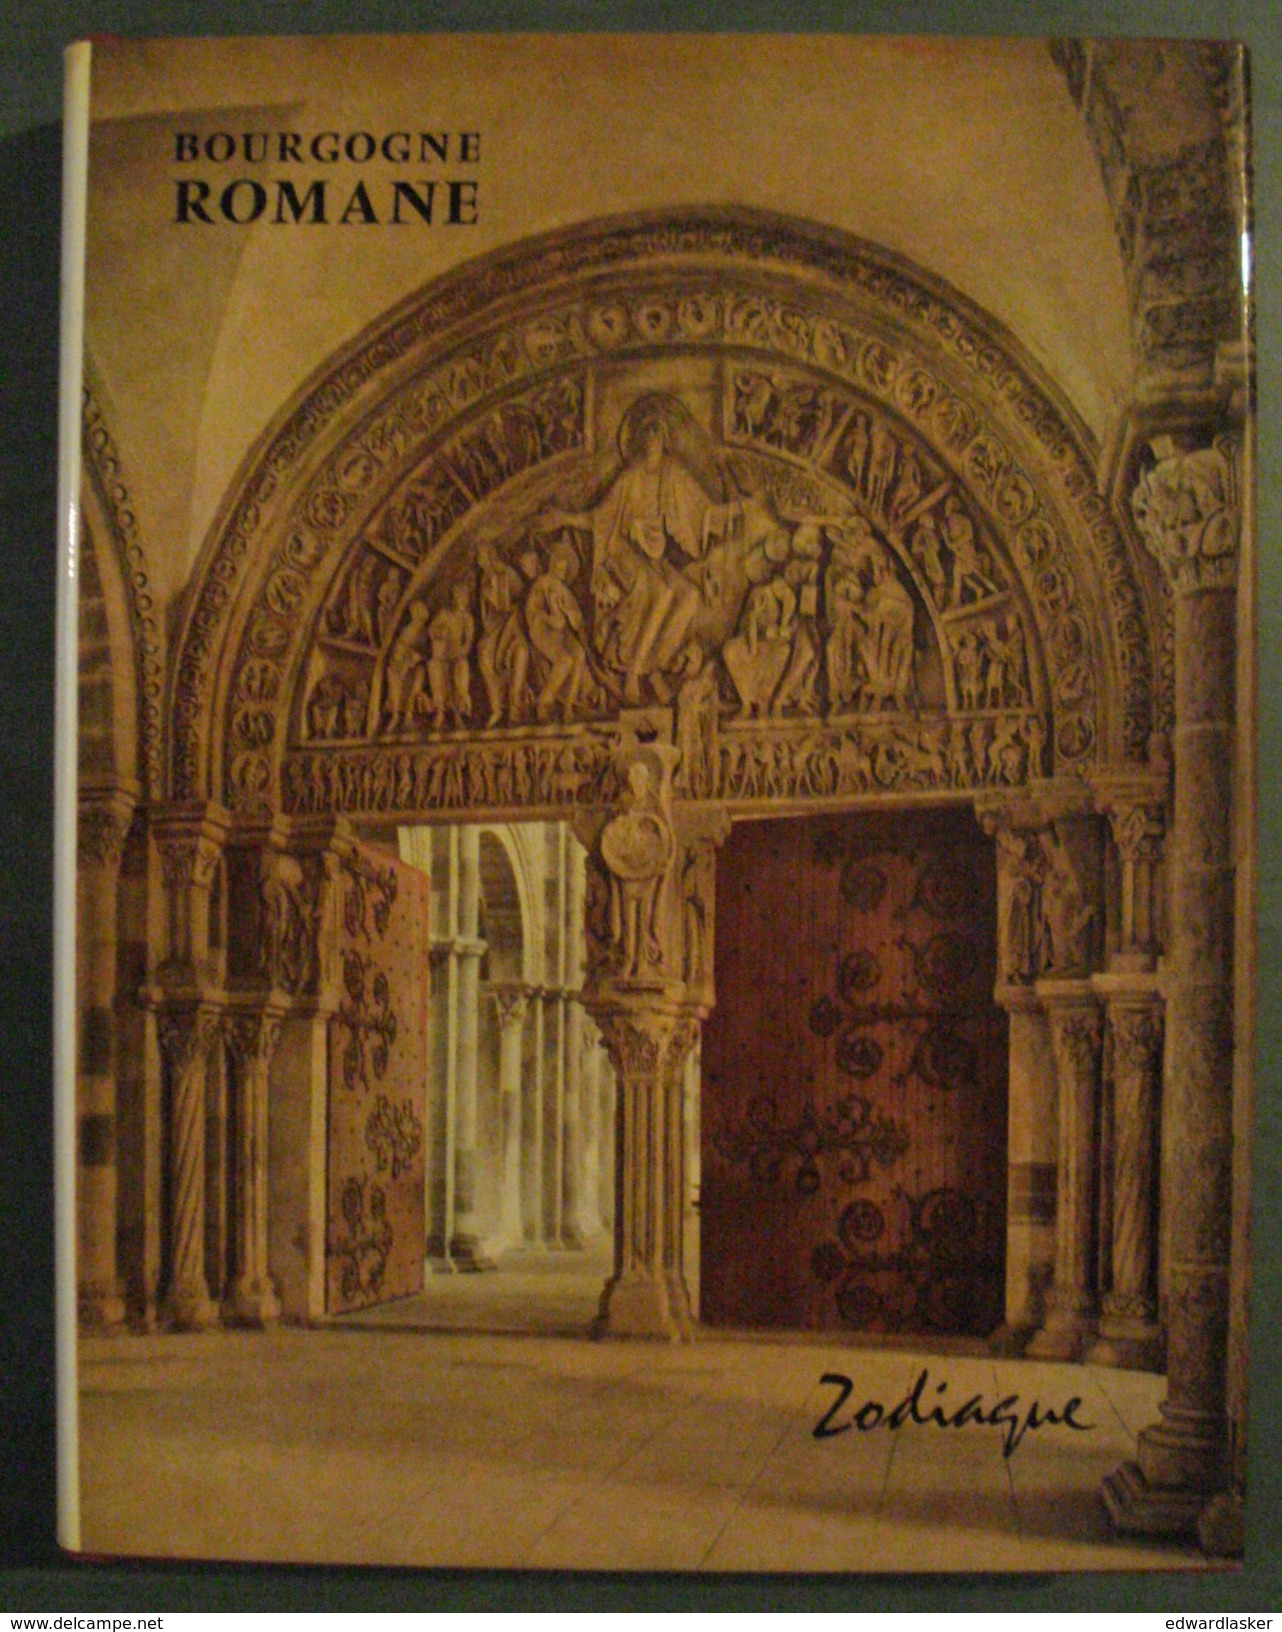 BOURGOGNE ROMANE //Raymond Oursel - Zodiaque La Nuit Des Temps - 1979 - Bourgogne